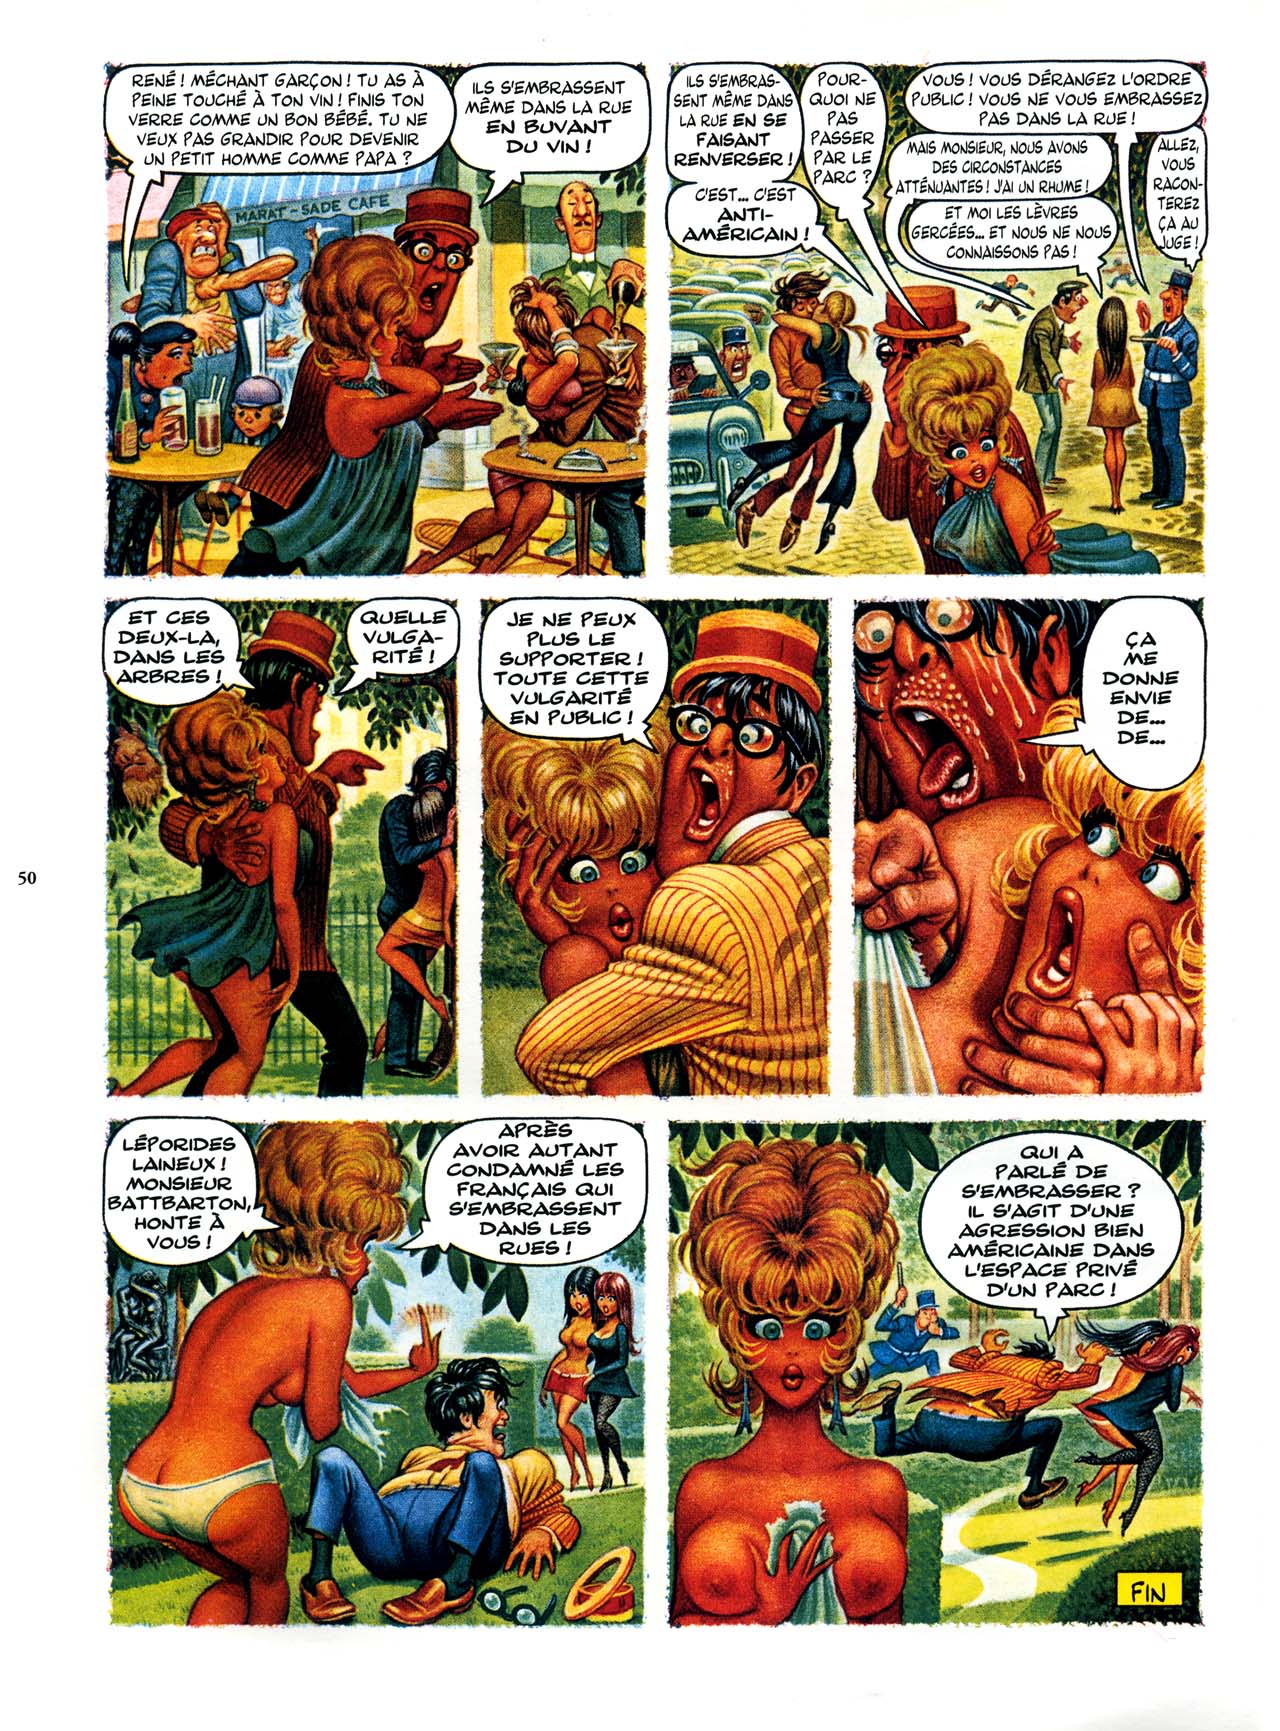 Playboys Little Annie Fanny Vol. 2 - 1965-1970 numero d'image 50